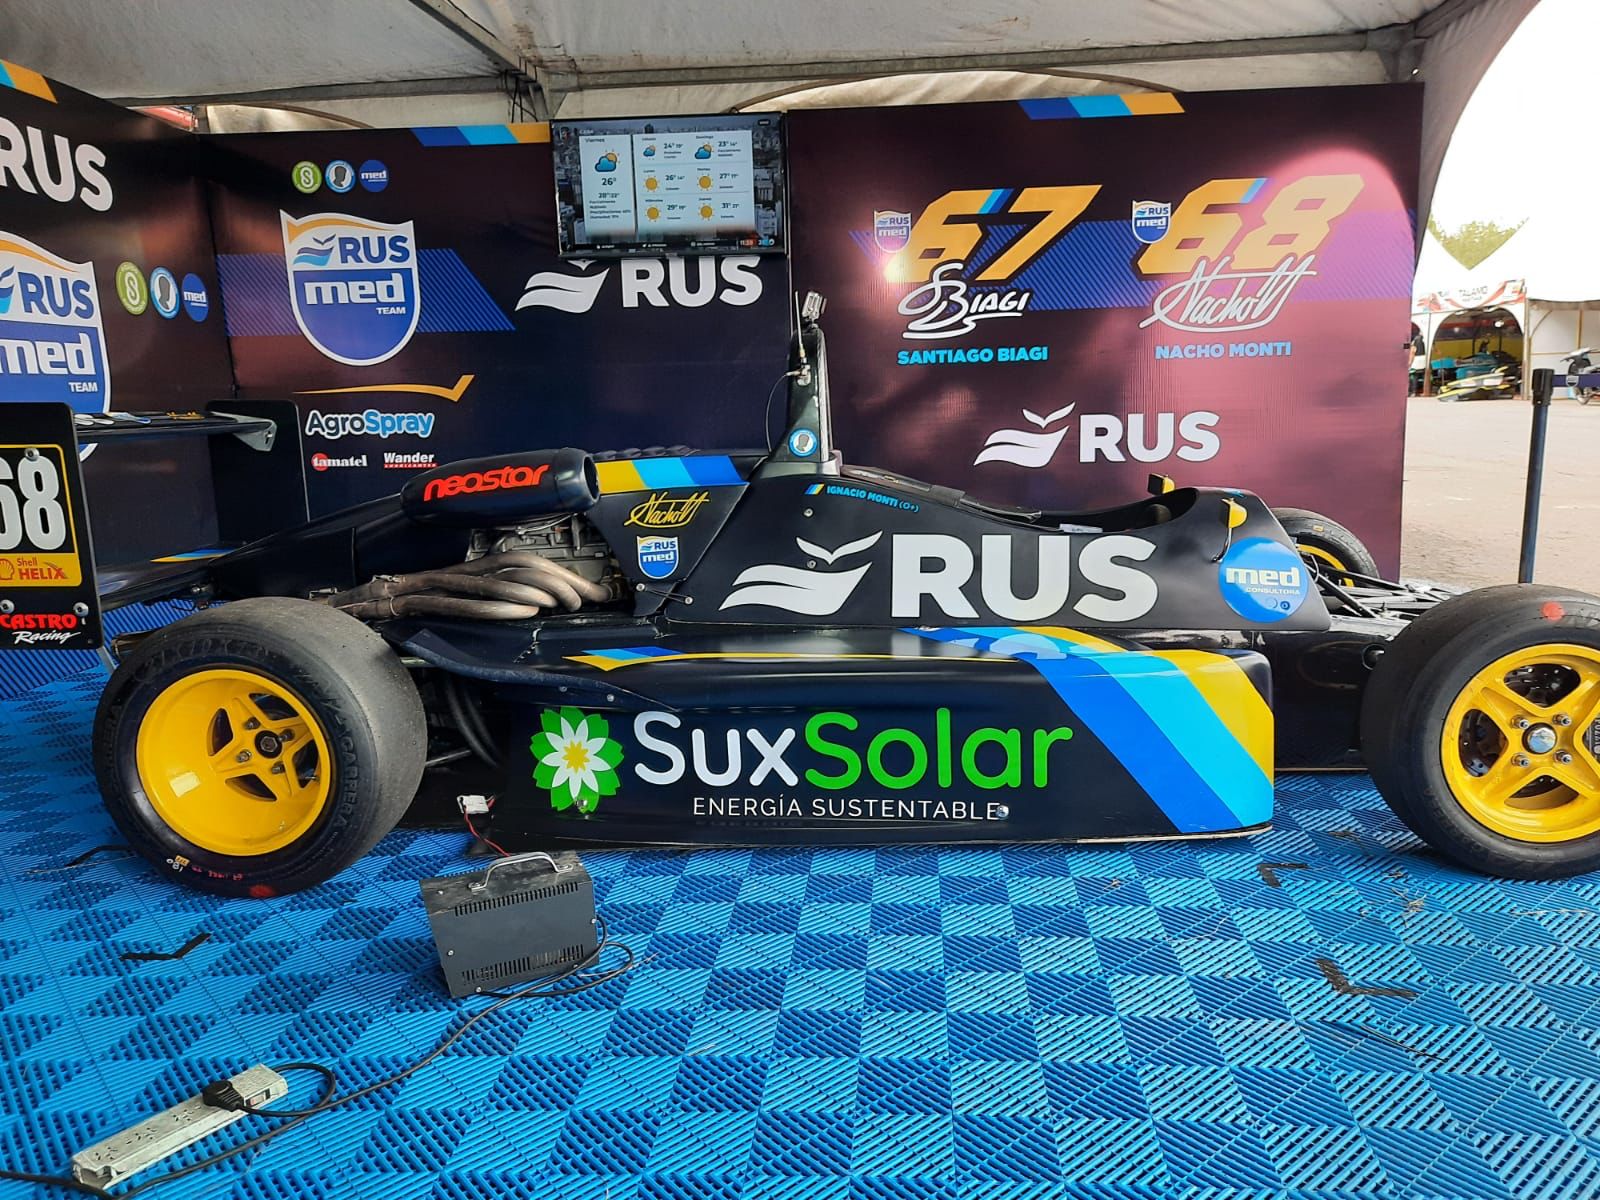 La empresa funense Sux Solar le gestiona la huella de carbono neutra a la escudería Rusmed Team